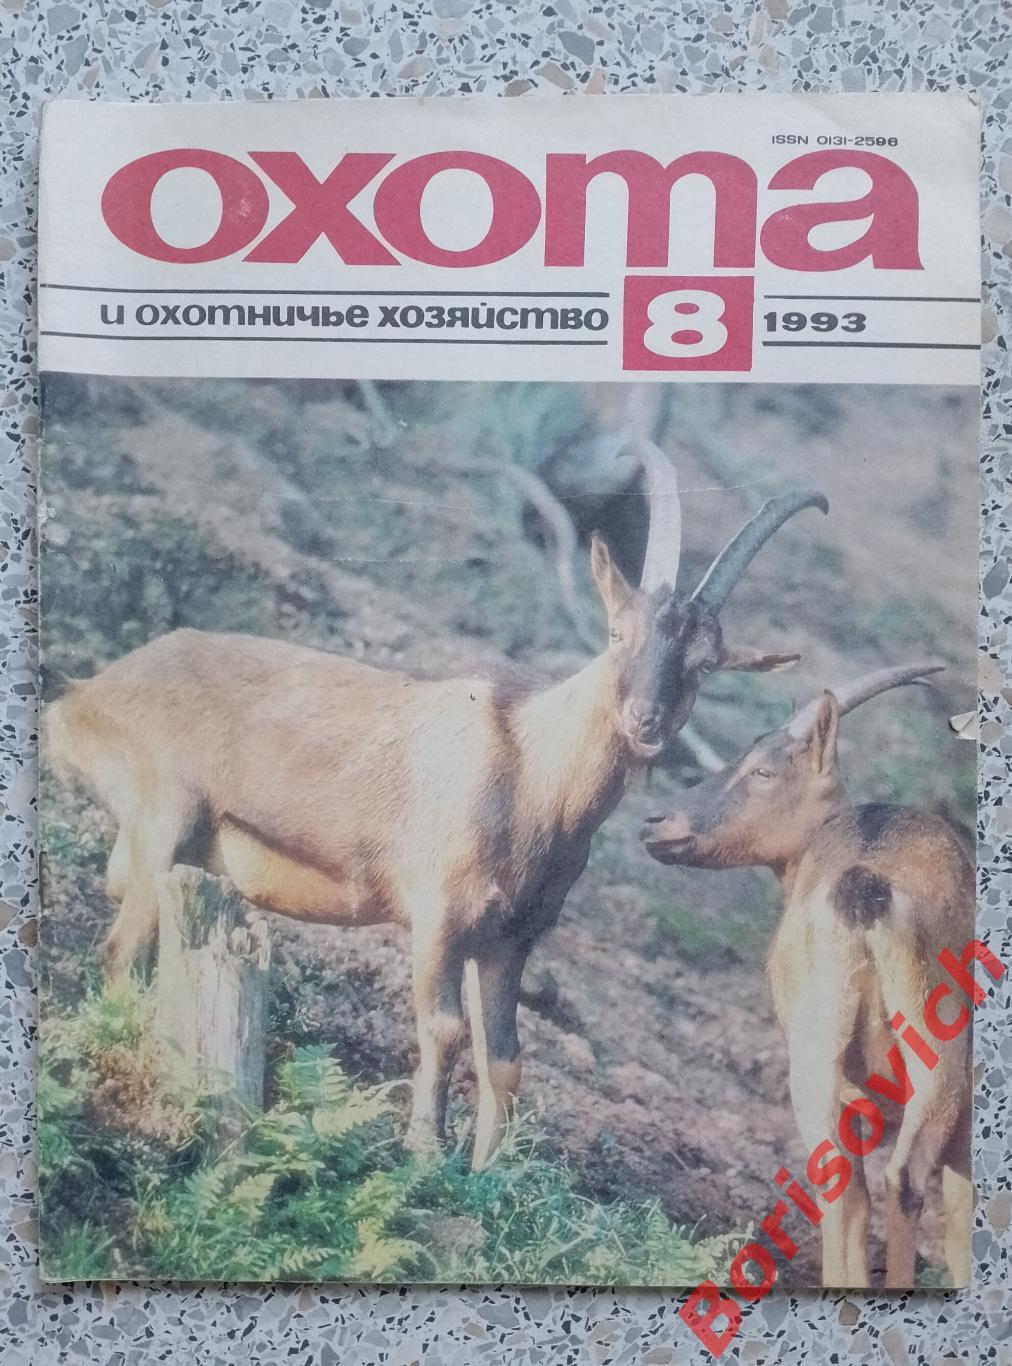 ОХОТА и охотничье хозяйство N 8. 1993